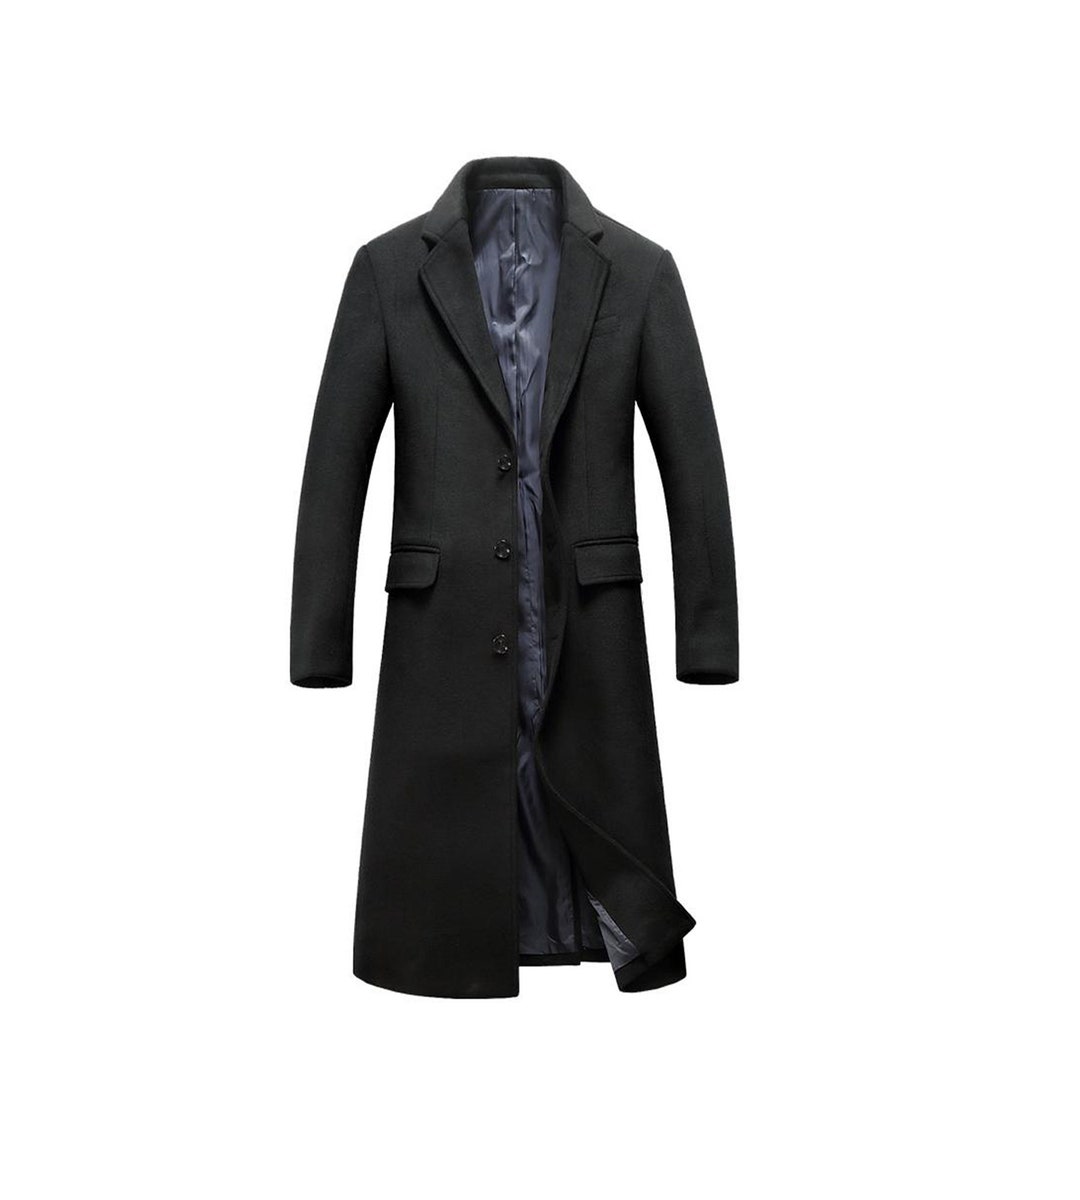 Mens Black Long Overcoat Vintage Long Trench Coat for Men Mens Business ...